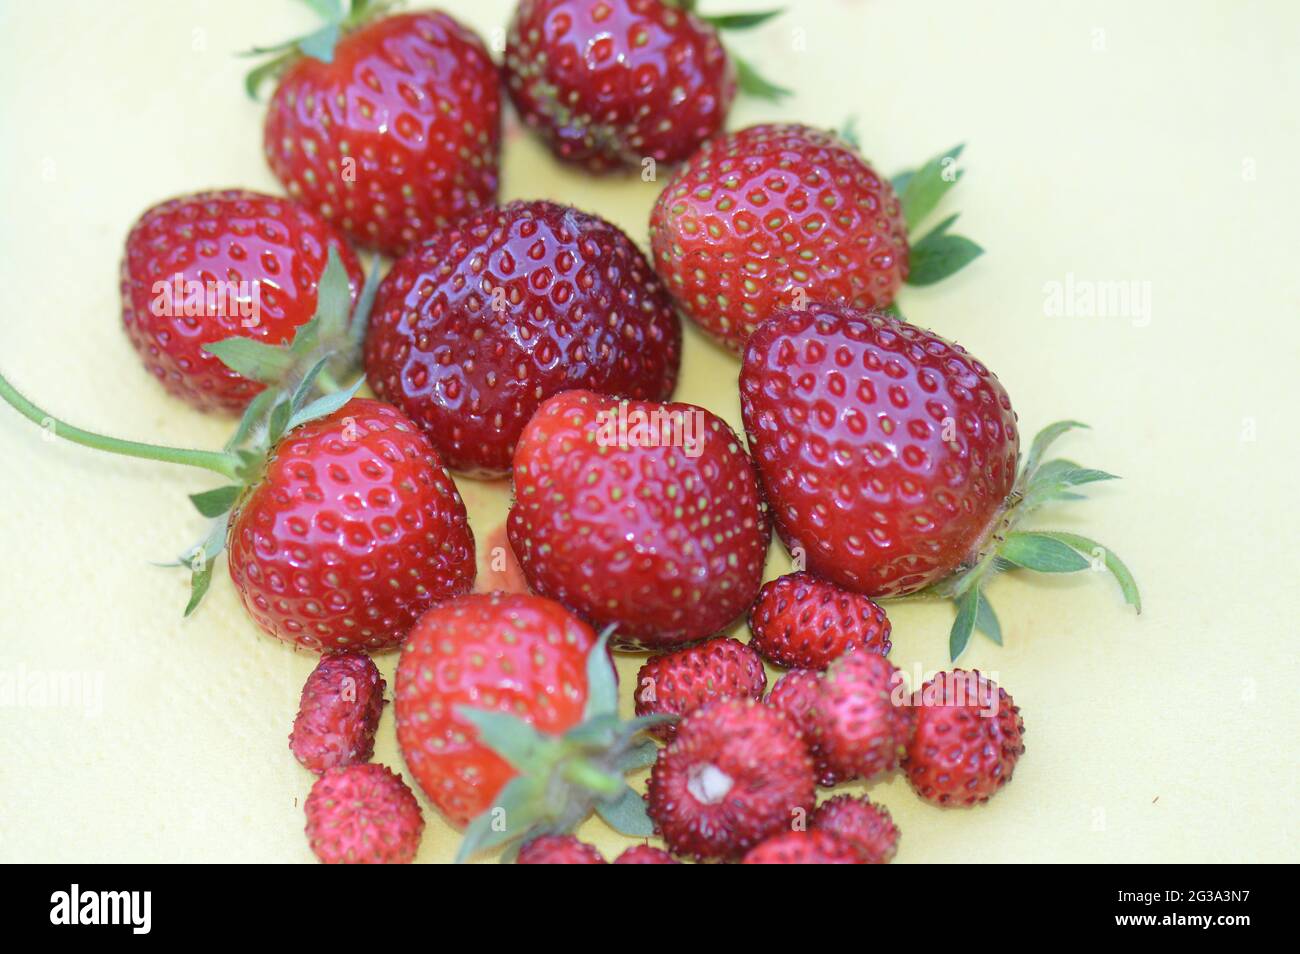 Erdbeere - verschiedene Sorten herrlicher roter frisch gepflückter Früchte aus dem eigenen Garten in Nahaufnahme auf gelber Serviette Stock Photo